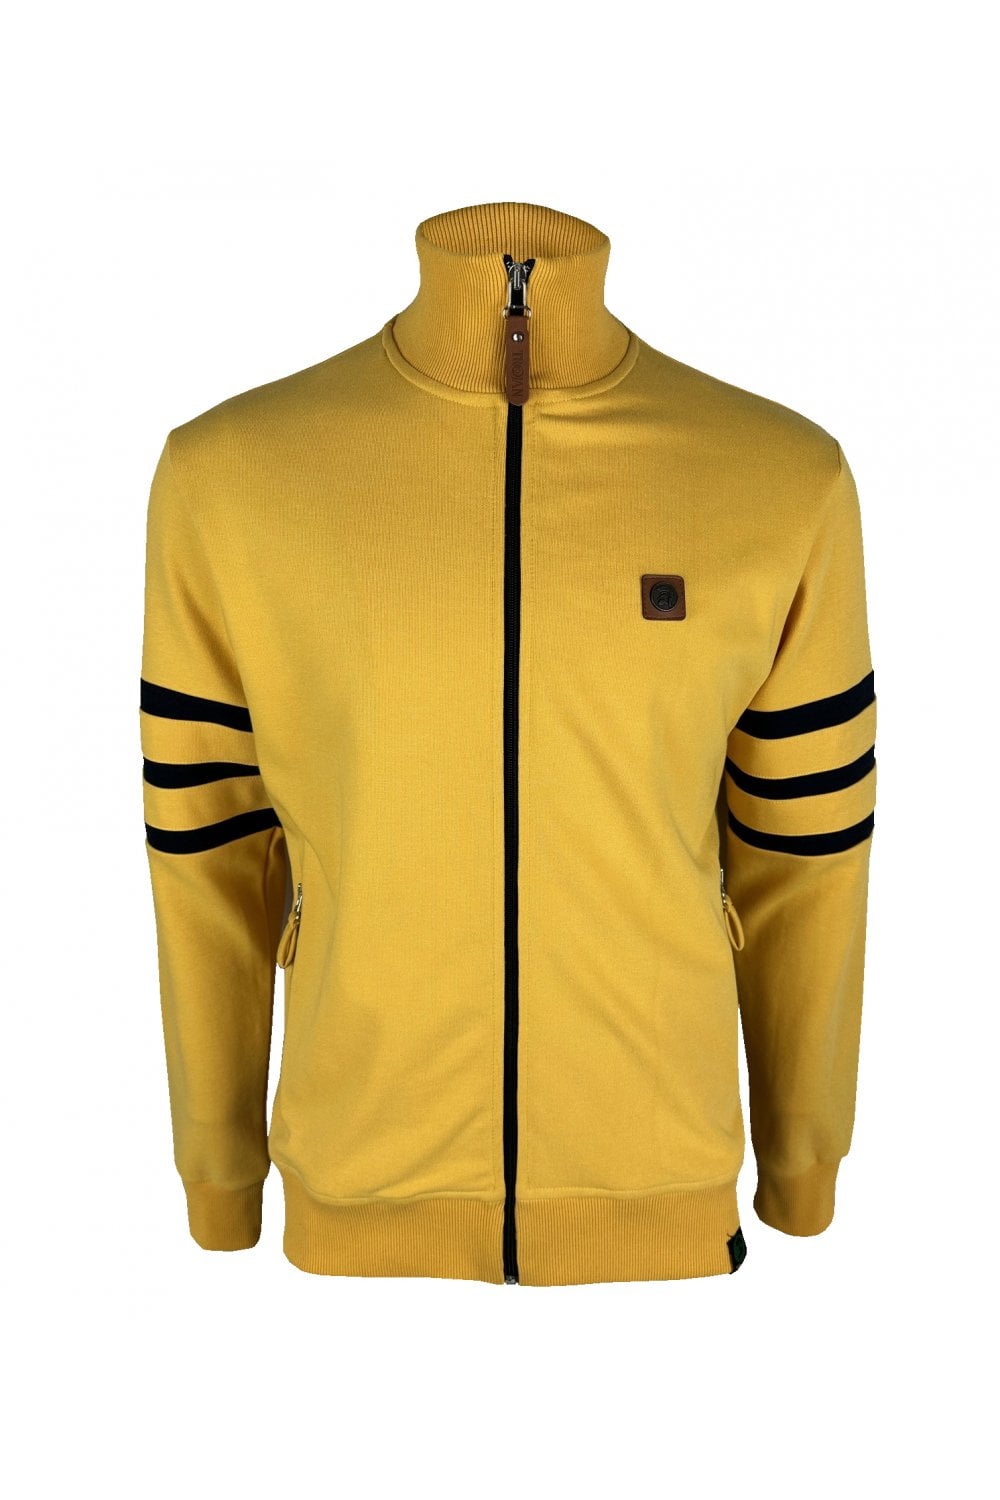 Trojan TR/8851 Stripe Sleeve Track Top Mustard - Raw Menswear